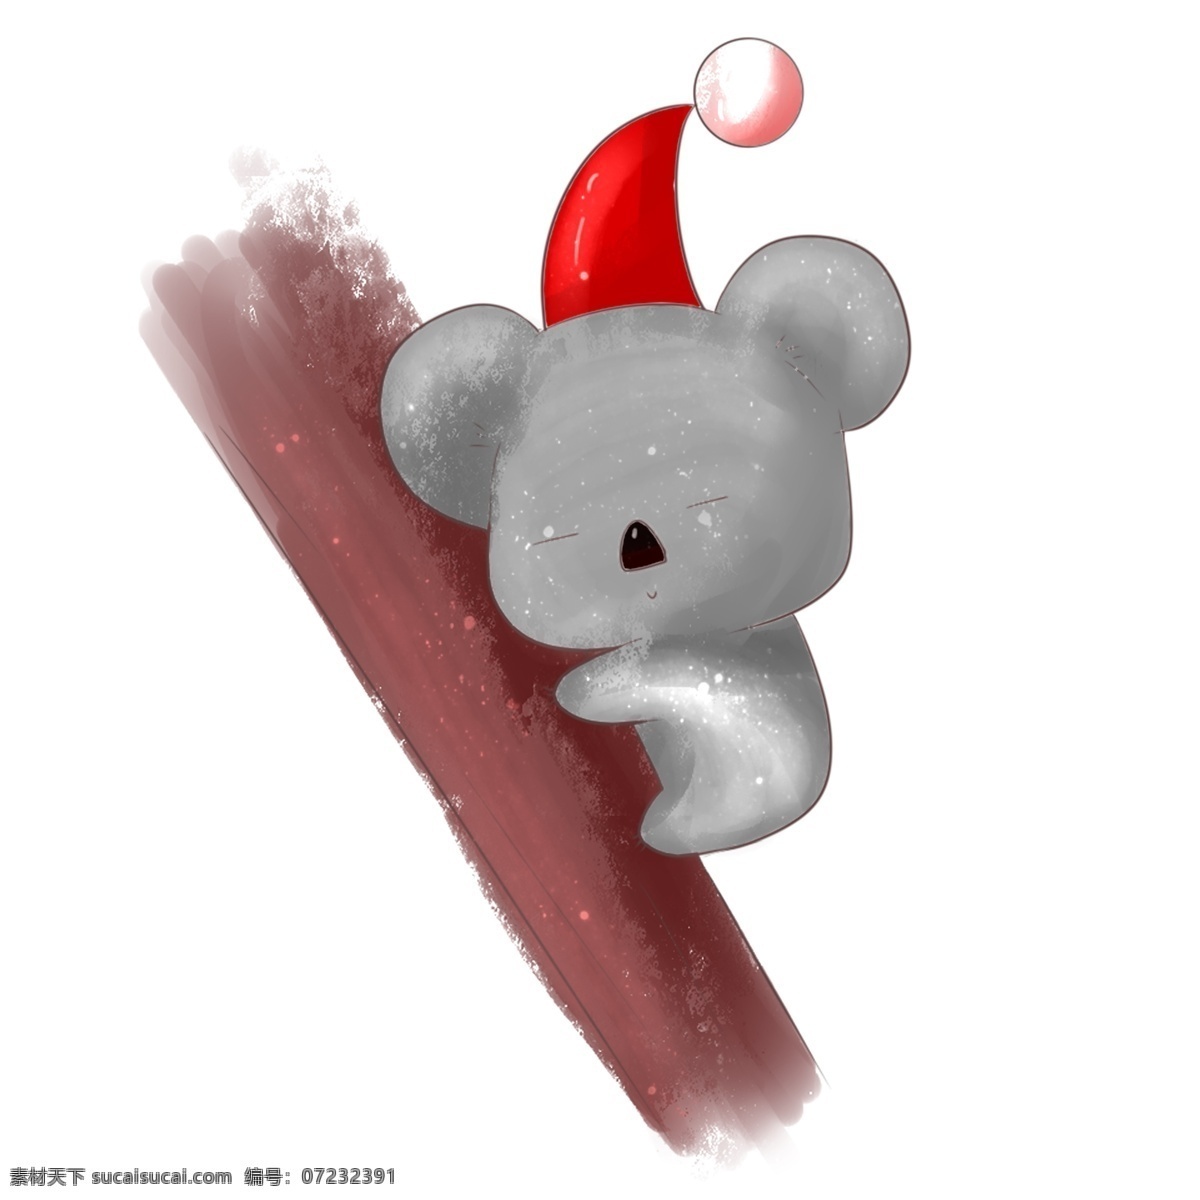 灰色 小考 拉 插画 可爱的小考拉 动物 红色圣诞帽 灰色的小考拉 圣诞节 考拉 爬 树上 睡觉